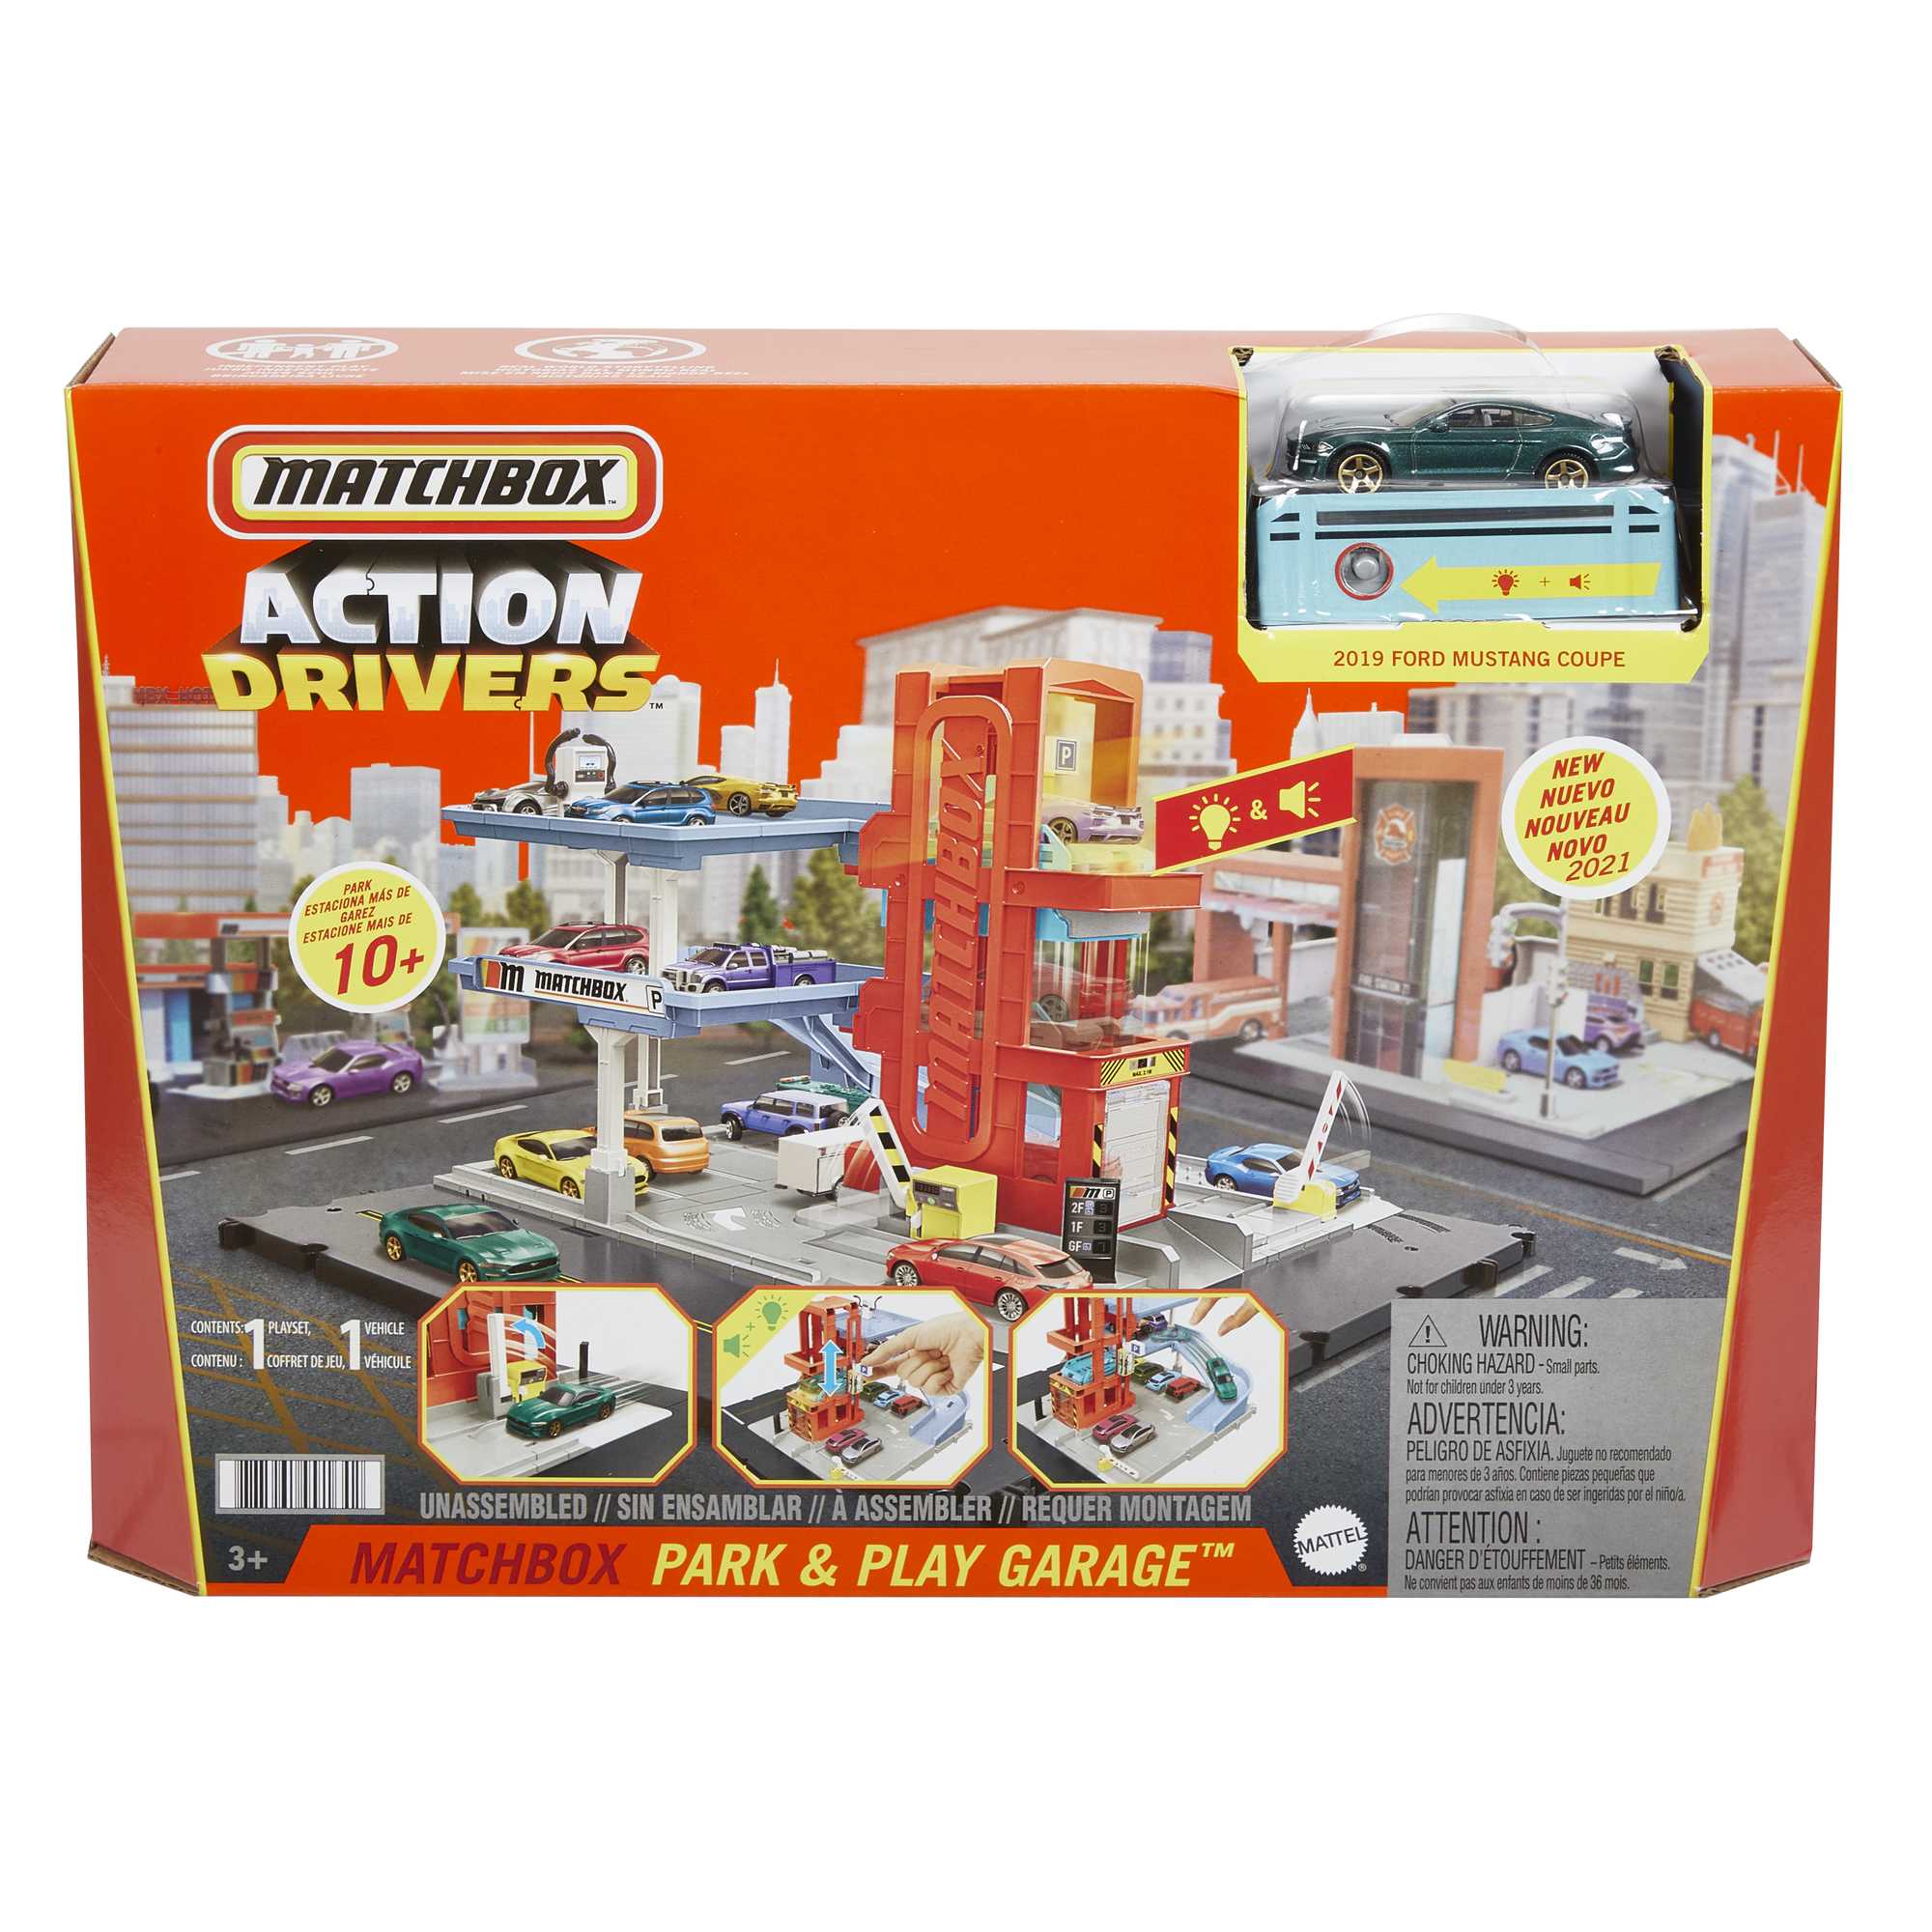 Matchbox Action Drivers Matchbox Park & Play Garage | HBL60 | MATTEL